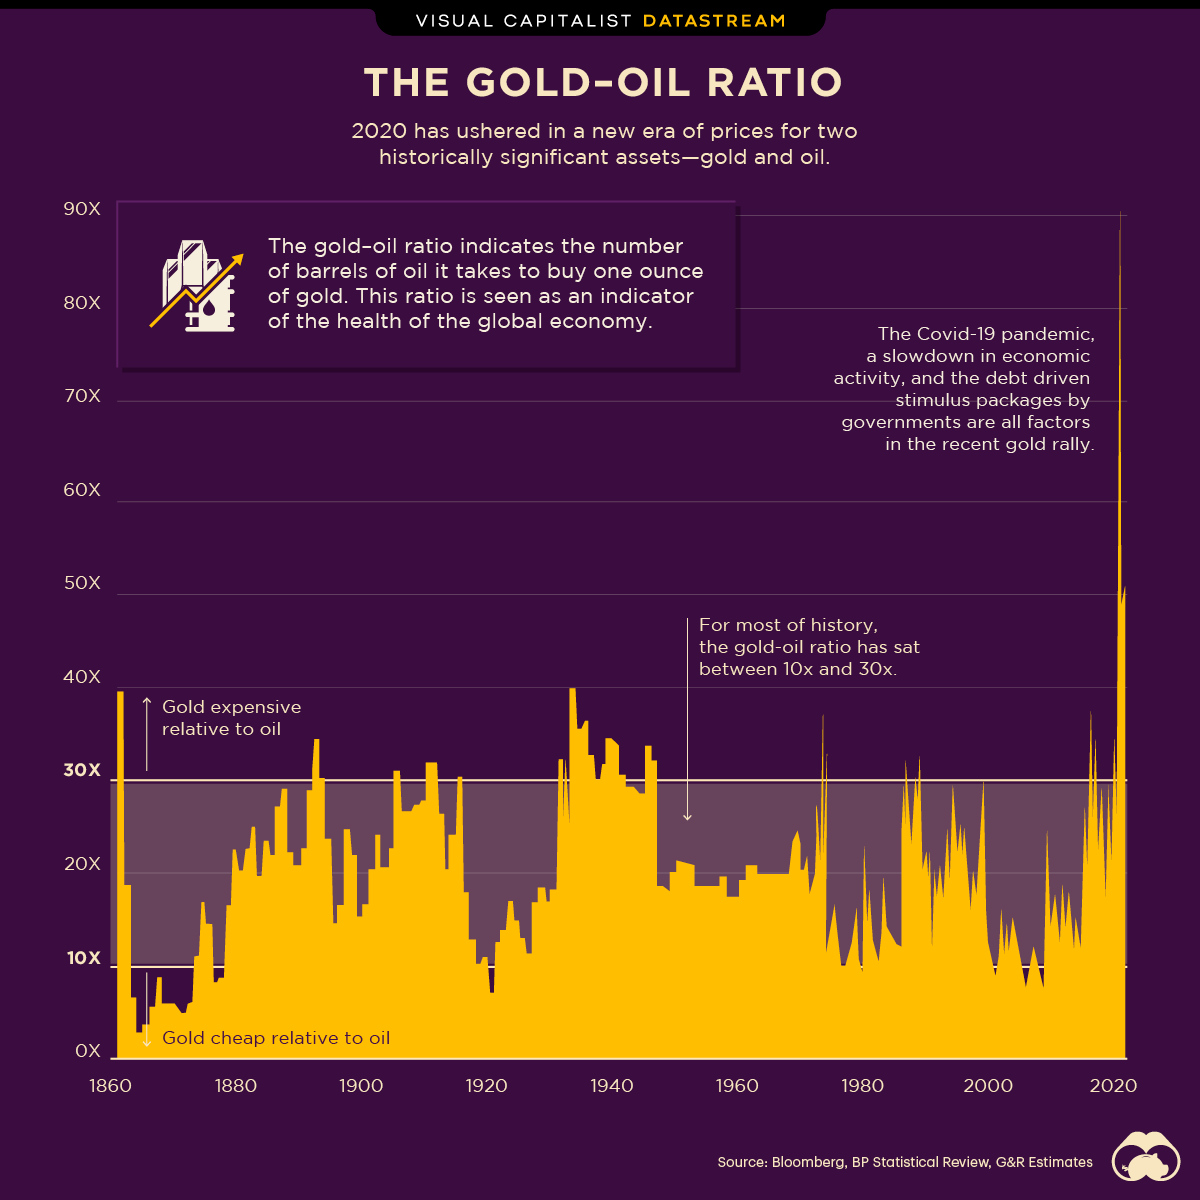 gold-oil ratio